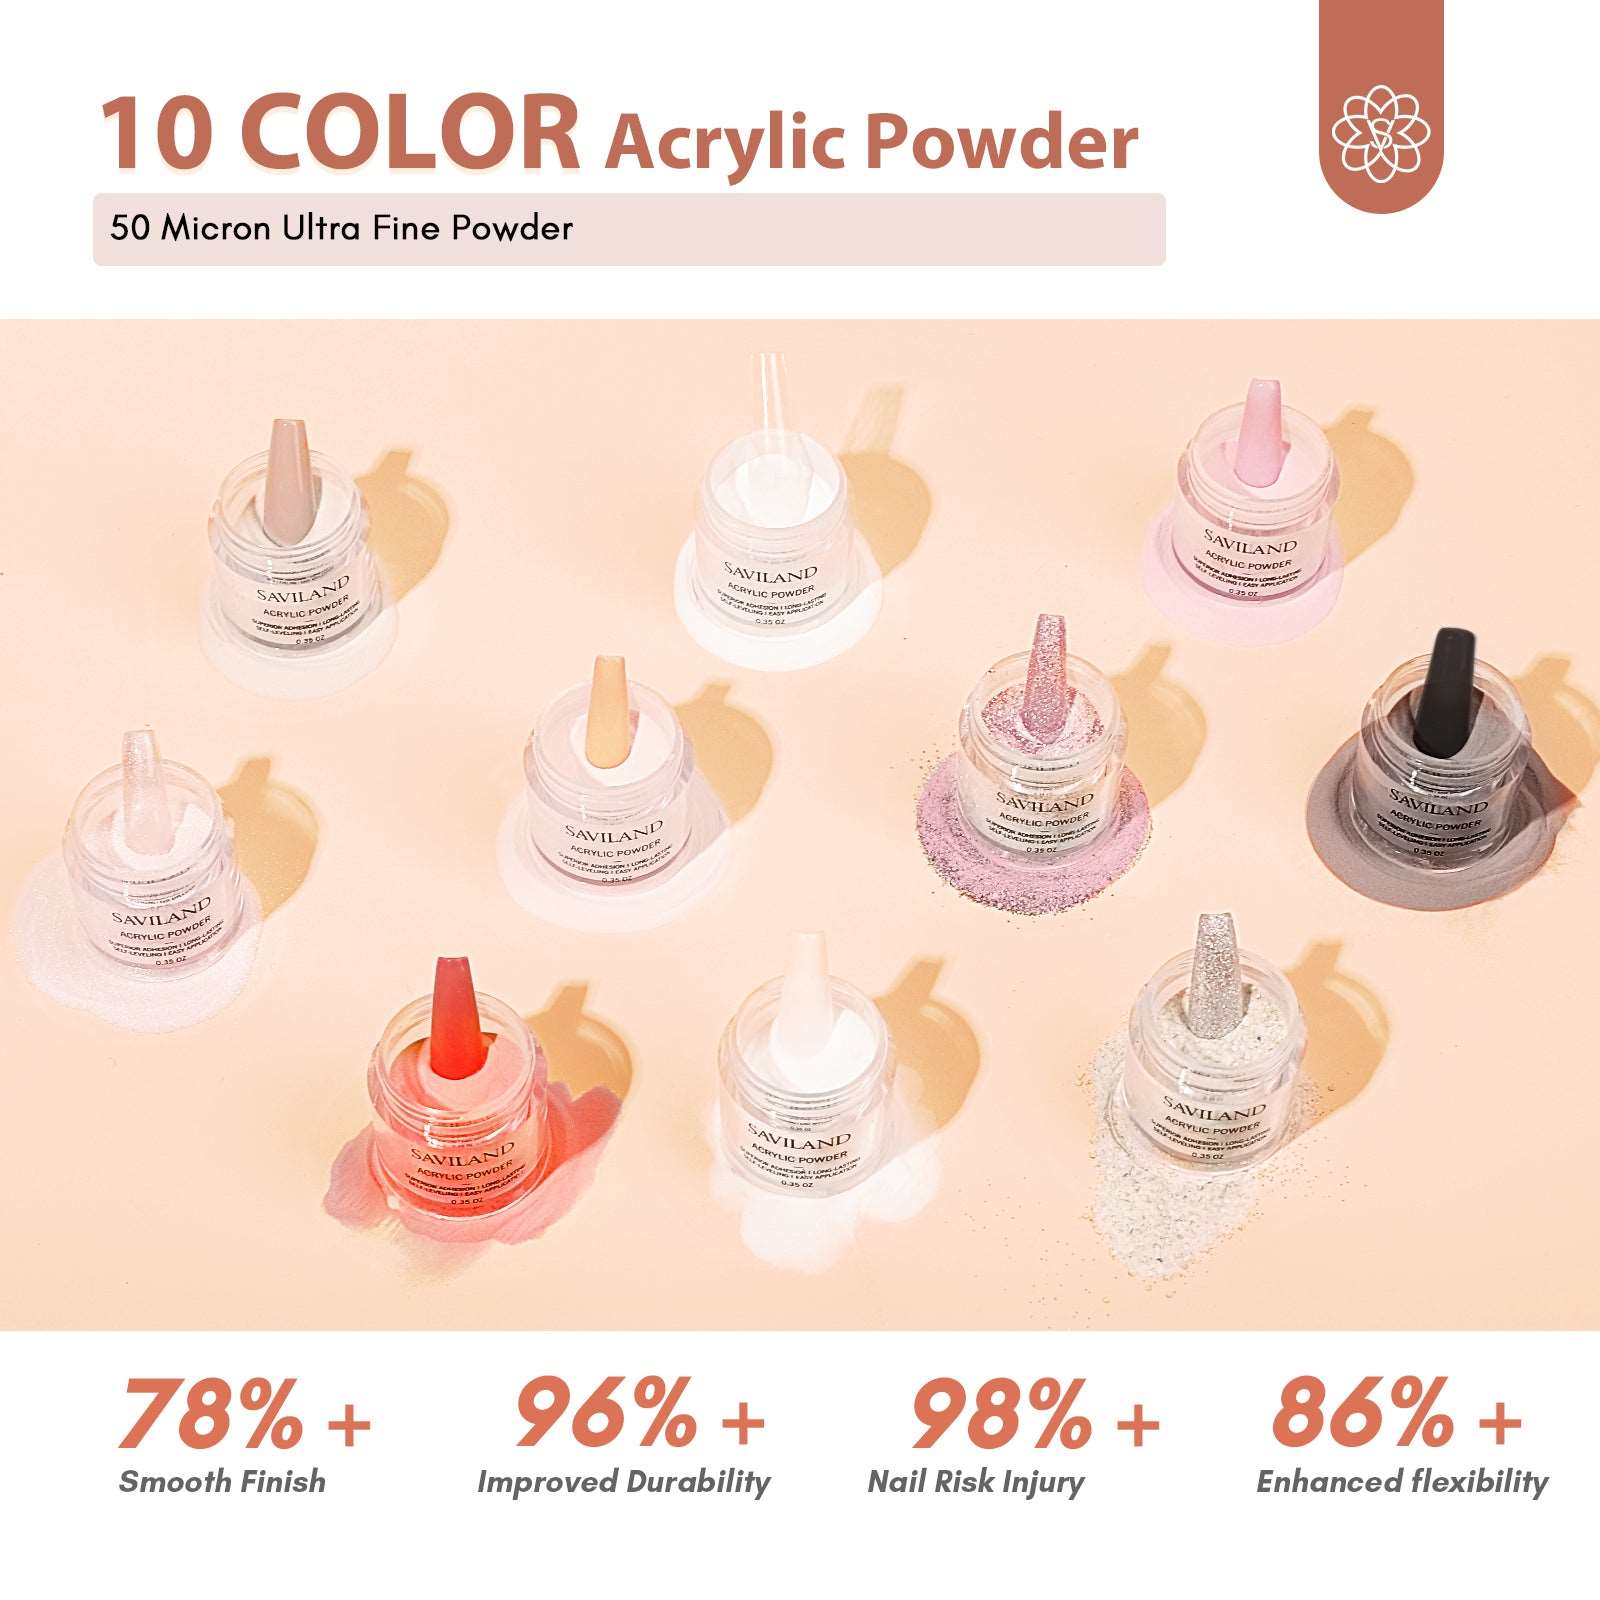 [US ONLY]Acrylic Nail Kit - 10 Colors Acrylic Nail Powder